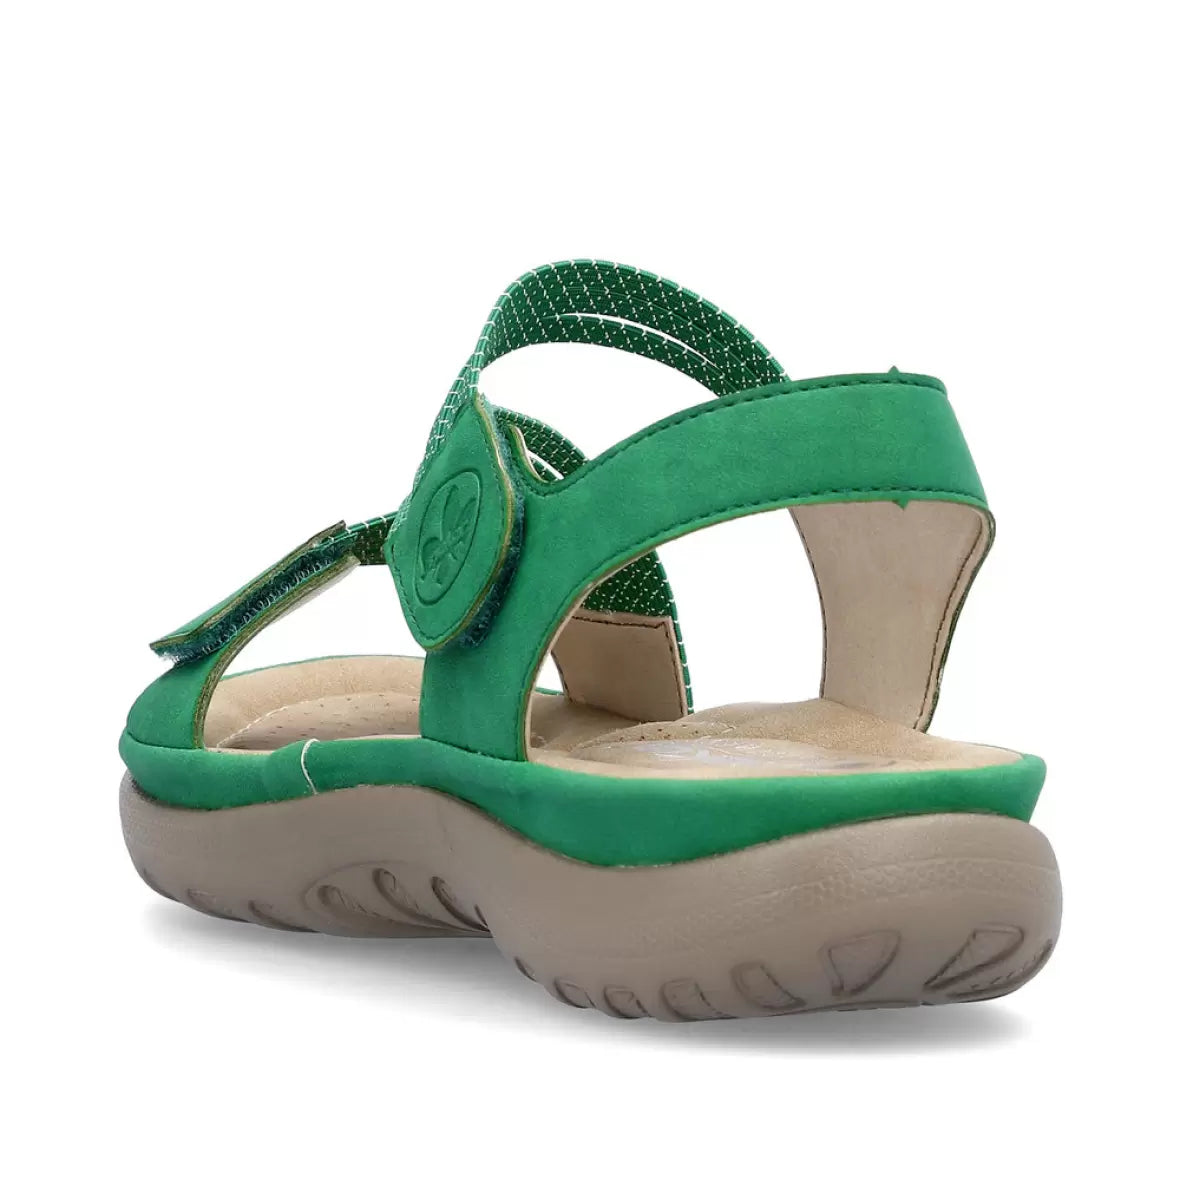 Rieker - Sandal med elastikremme, 42-0680 - Grøn